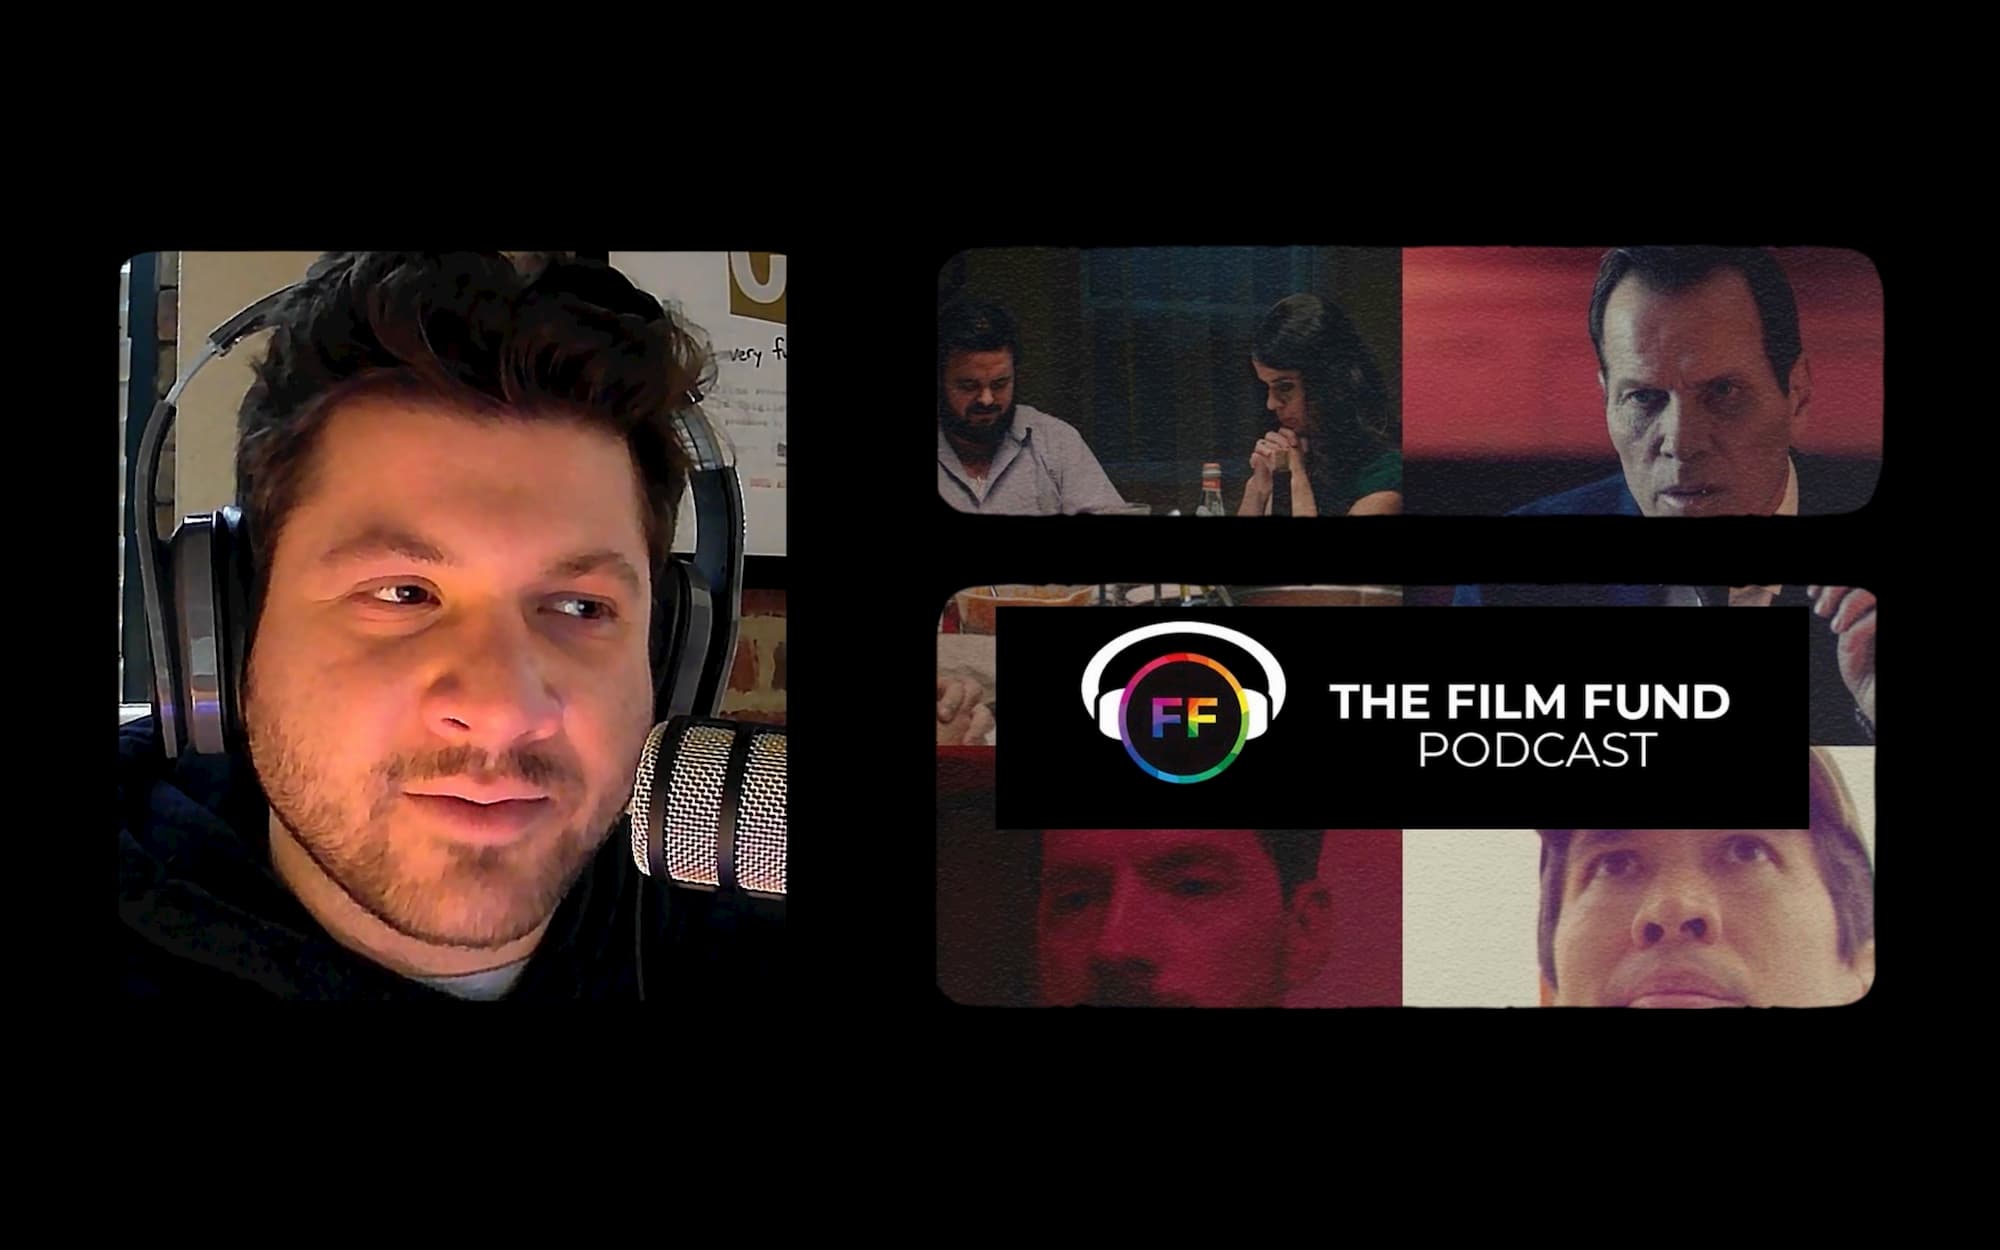 The Film Fund Podcast: Thomas Verdi